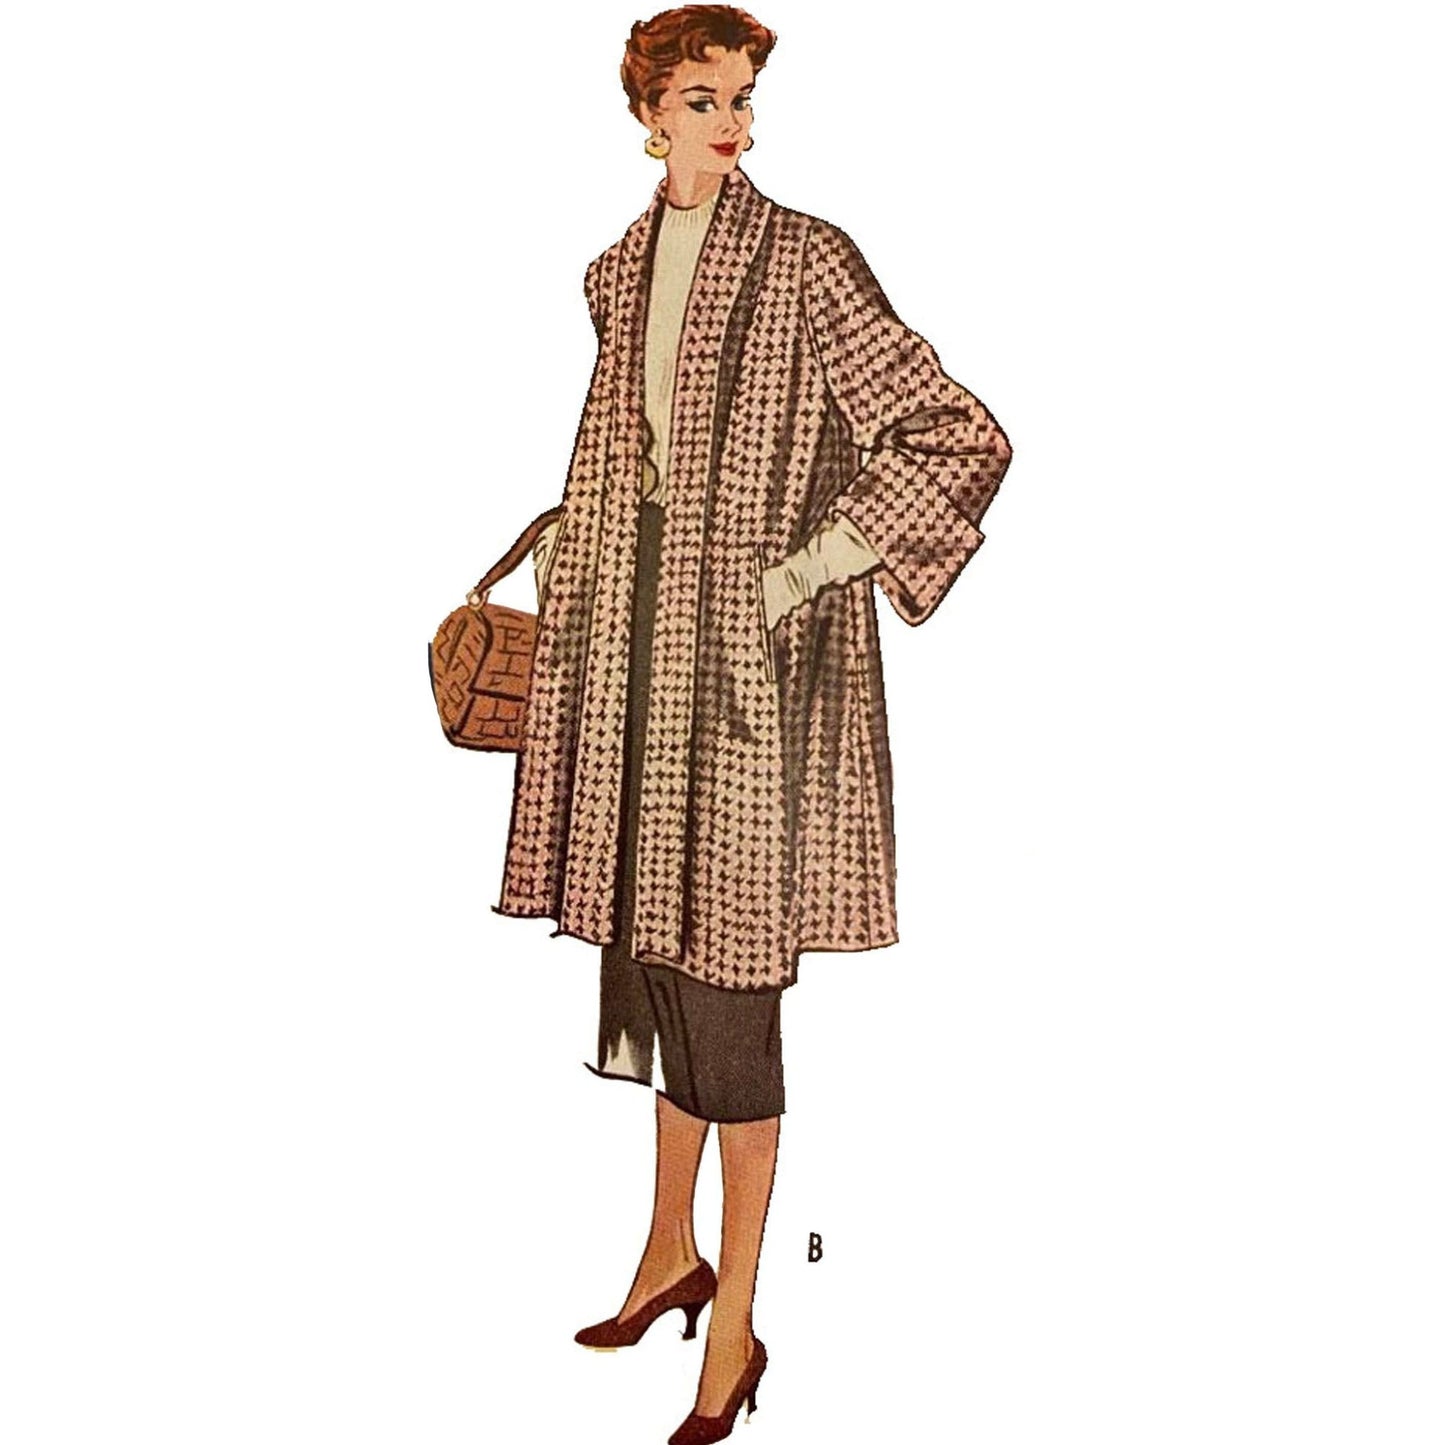 PDF - Vintage-Muster aus den 1950er Jahren – „Attention“-Mantel in zwei Längen – Brustumfang 36" (91,4 cm) – Sofort zu Hause ausdrucken